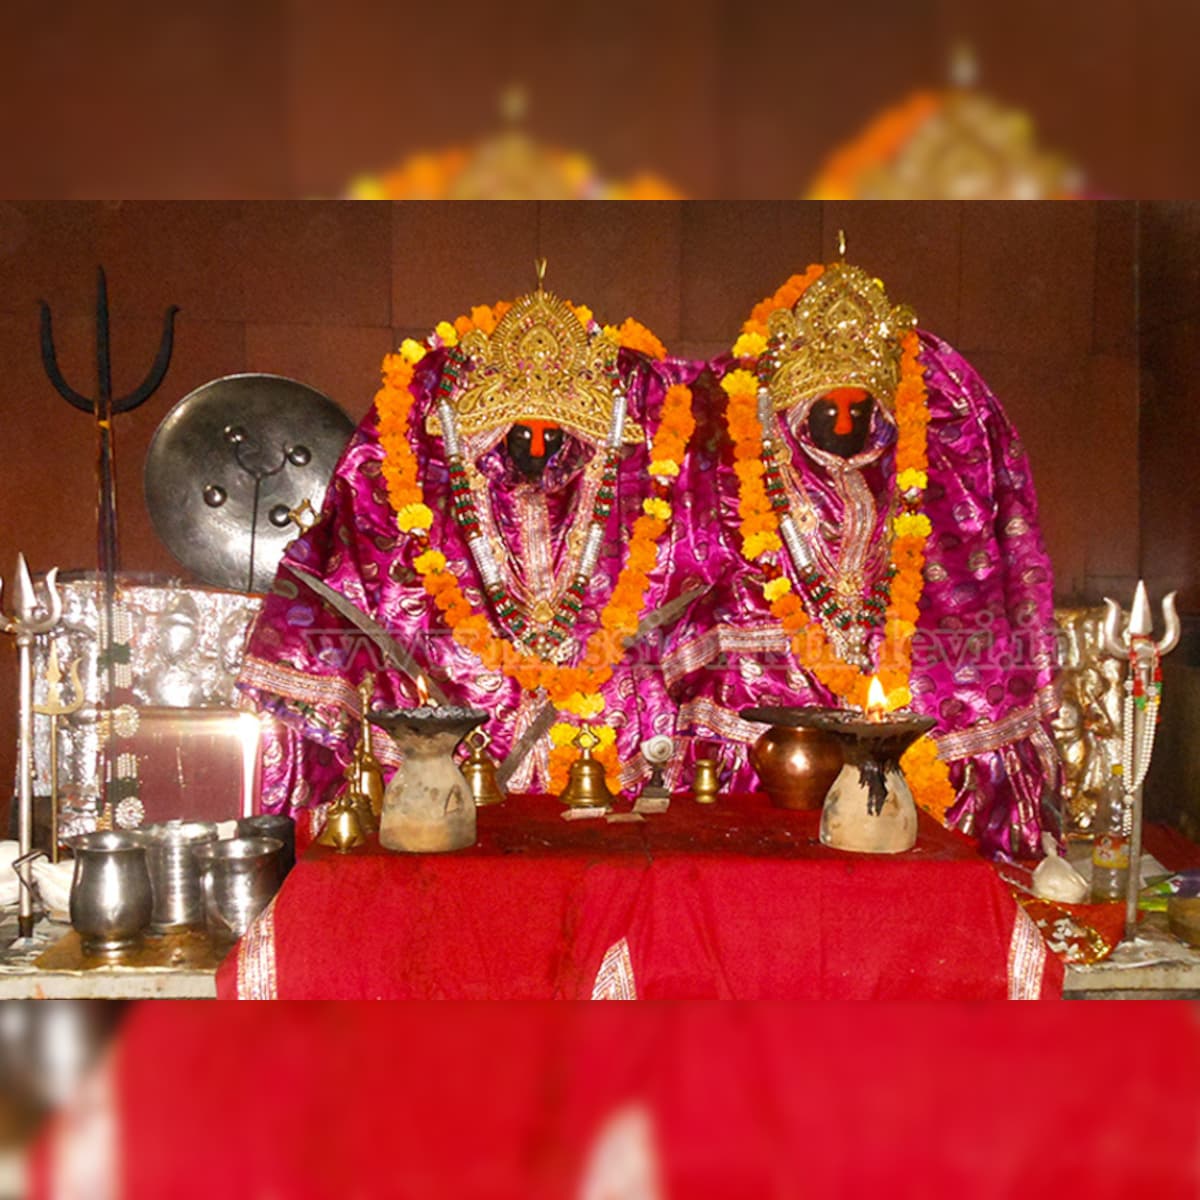 इस मंदिर में होता है चमत्कार, देवी भोग में लेती है उसी की शराब जिसकी मन्नत  होने वाली है पूरी- – News18 हिंदी